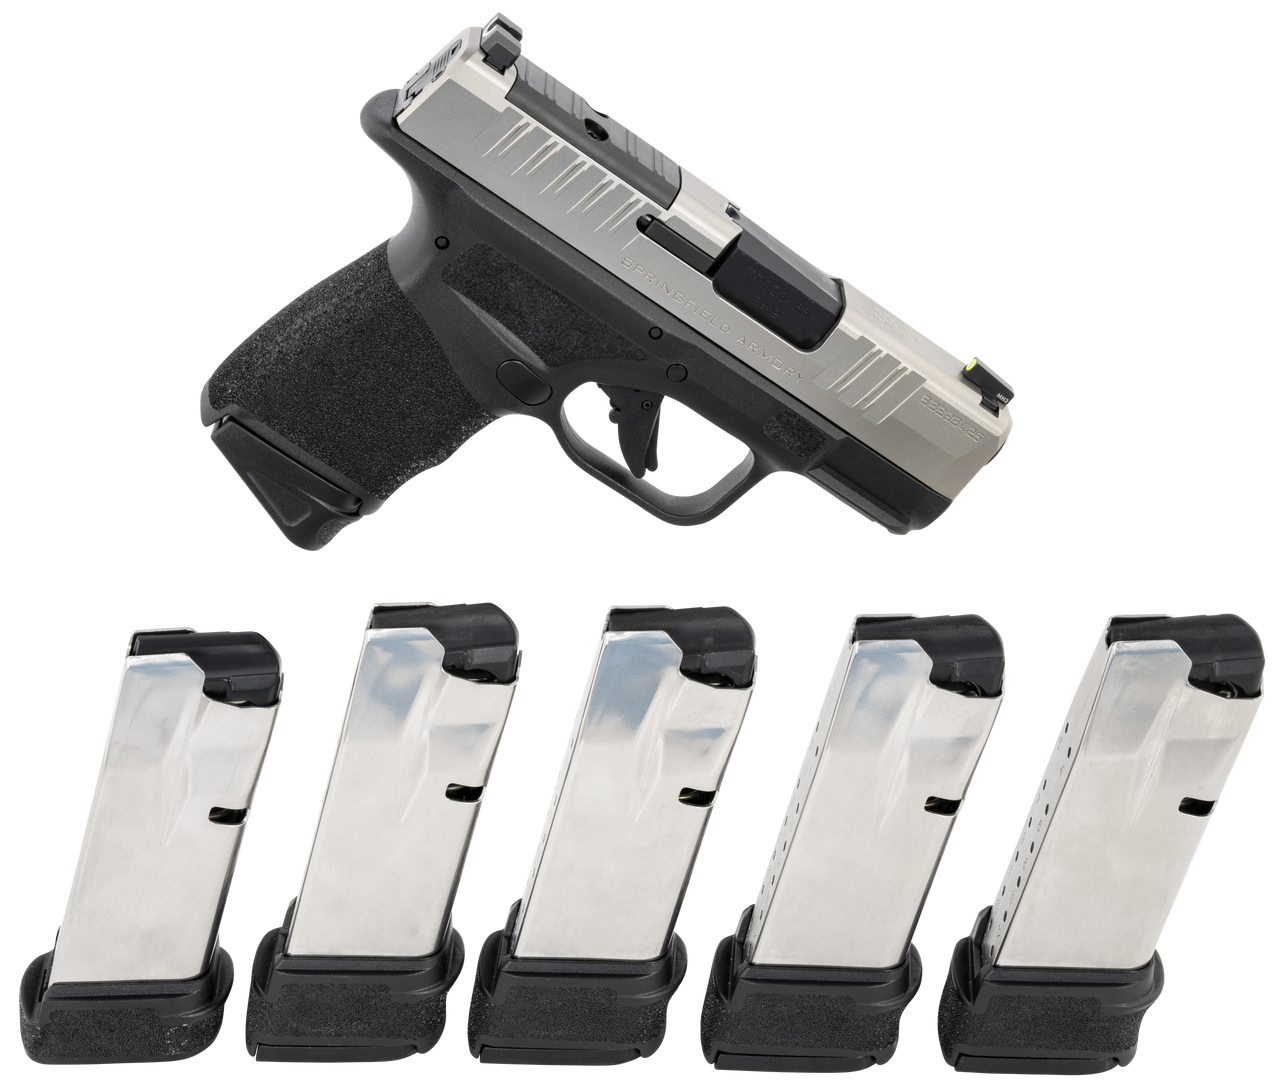 Springfield XDS MOD.2® Schematic Handgun Mat